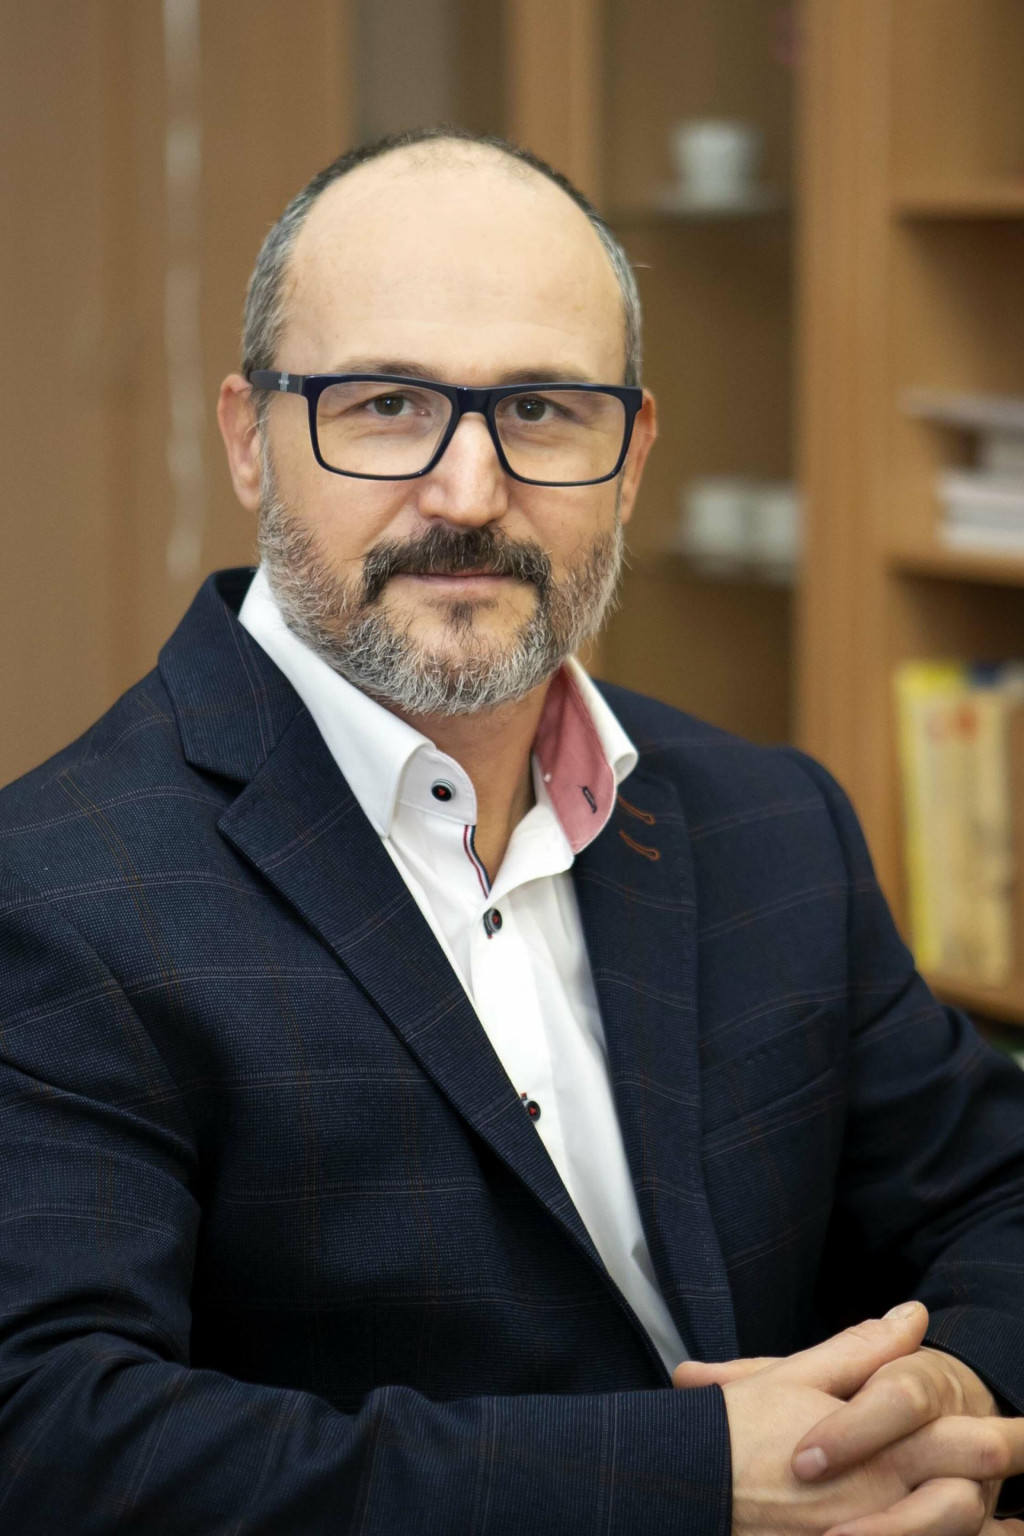 prof. MUDr. Peter Urdzík, PhD., MPH
prednosta Gynekologicko-pôrodníckej kliniky UNLP a LF UPJŠ Košice